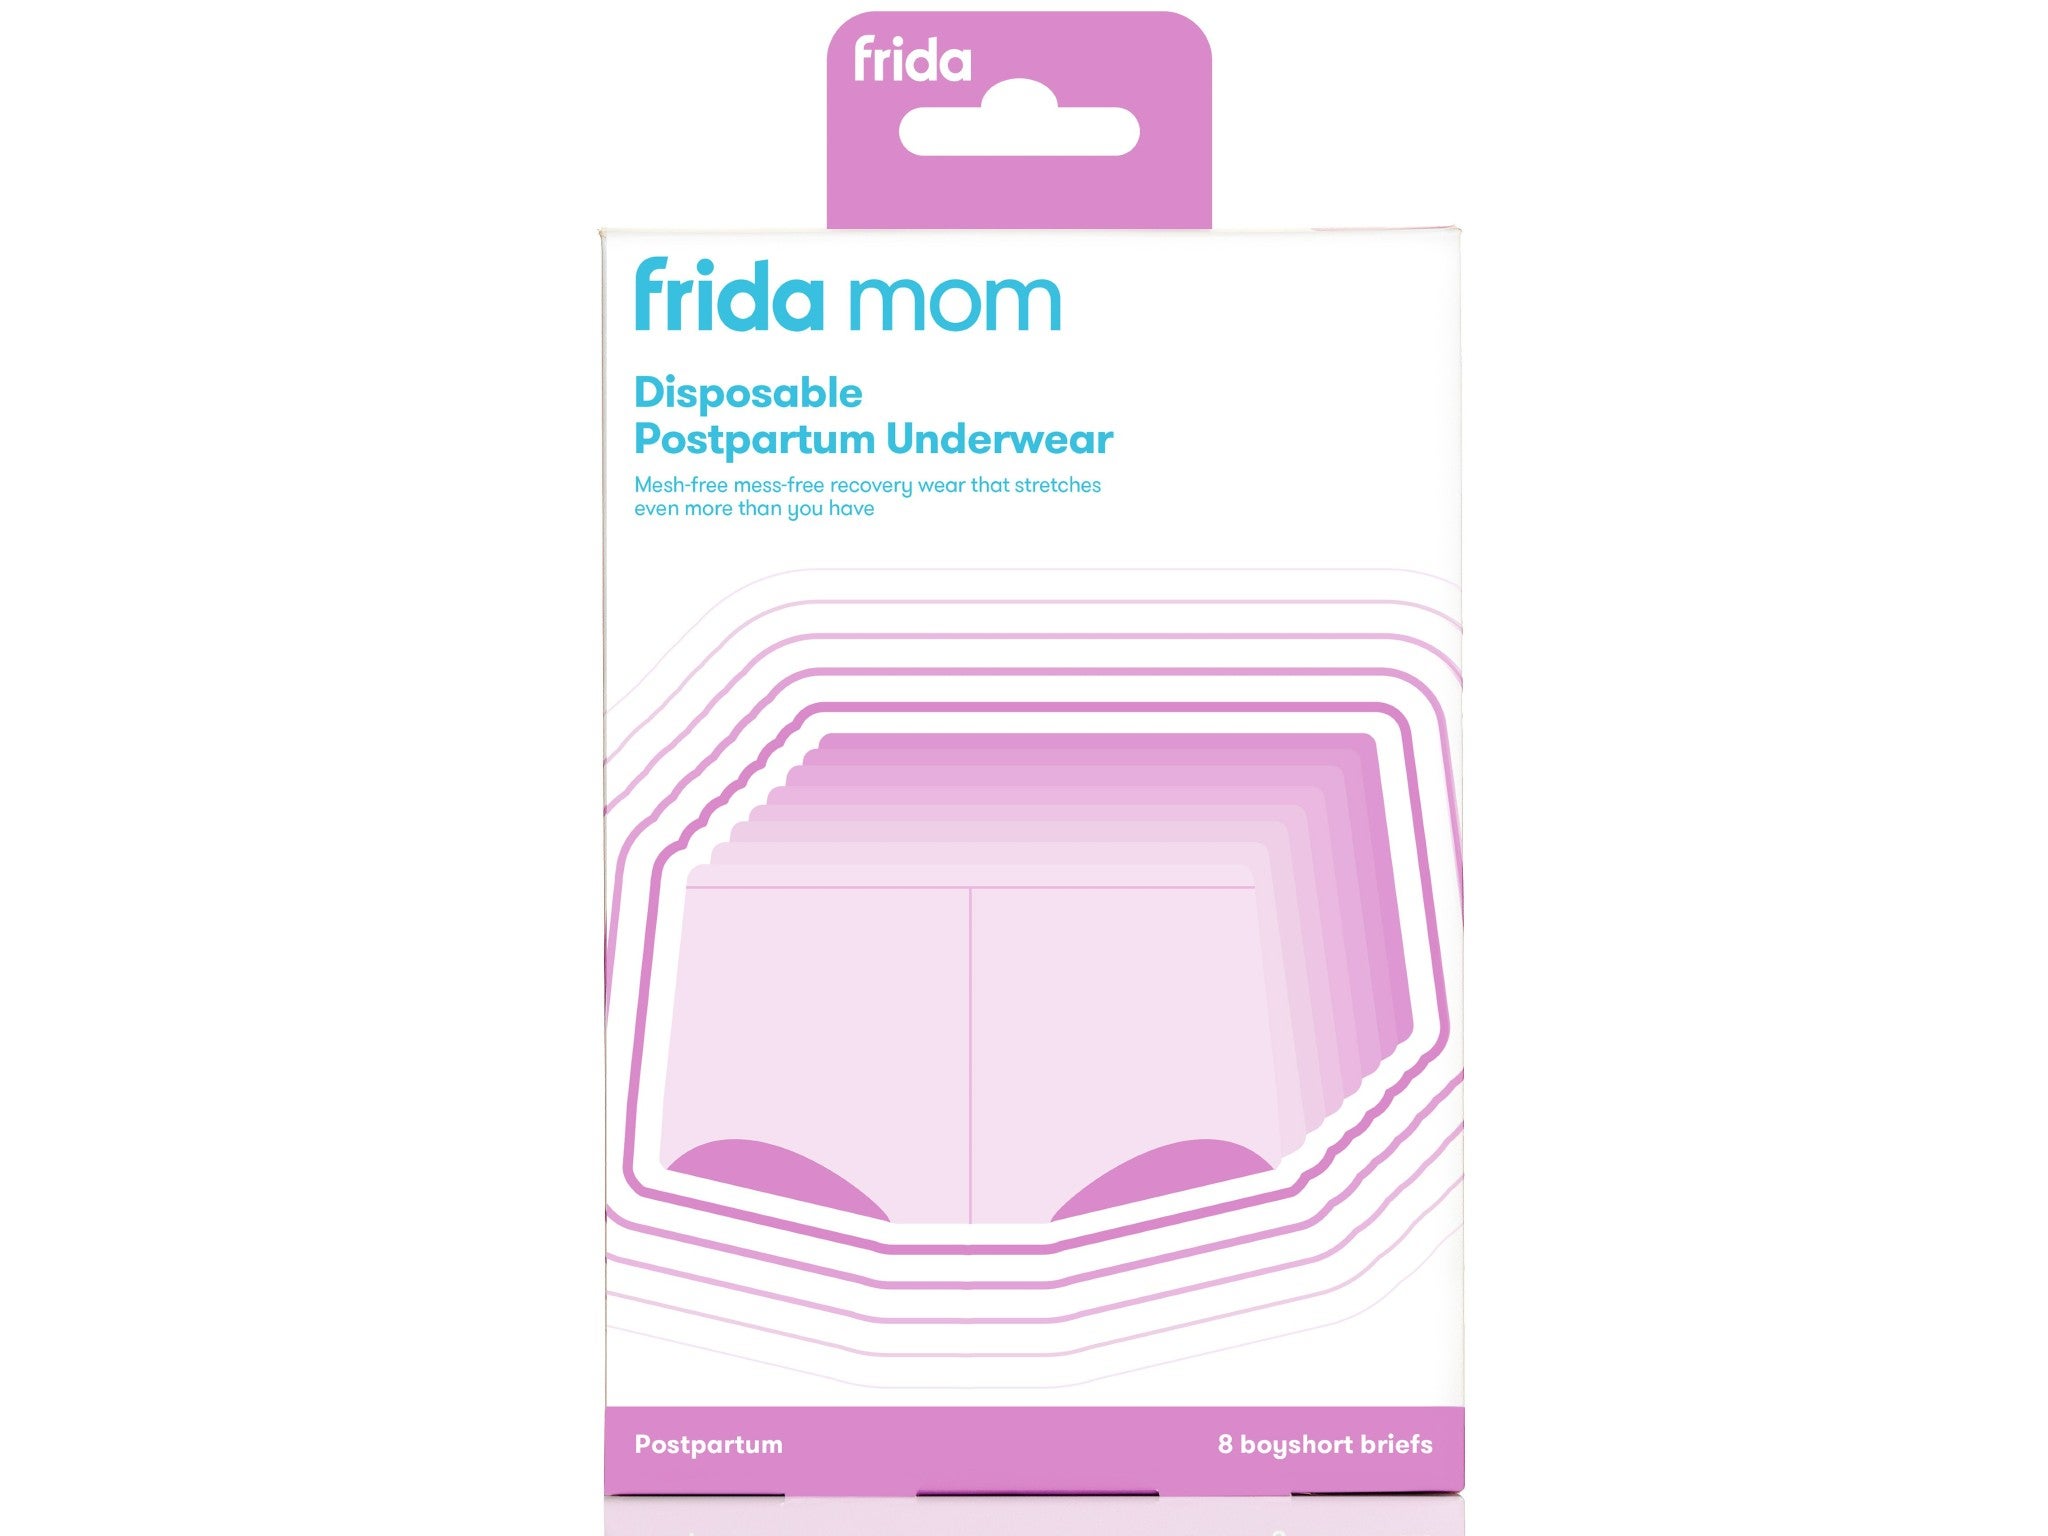 FridaMom postpartum disposable underwear